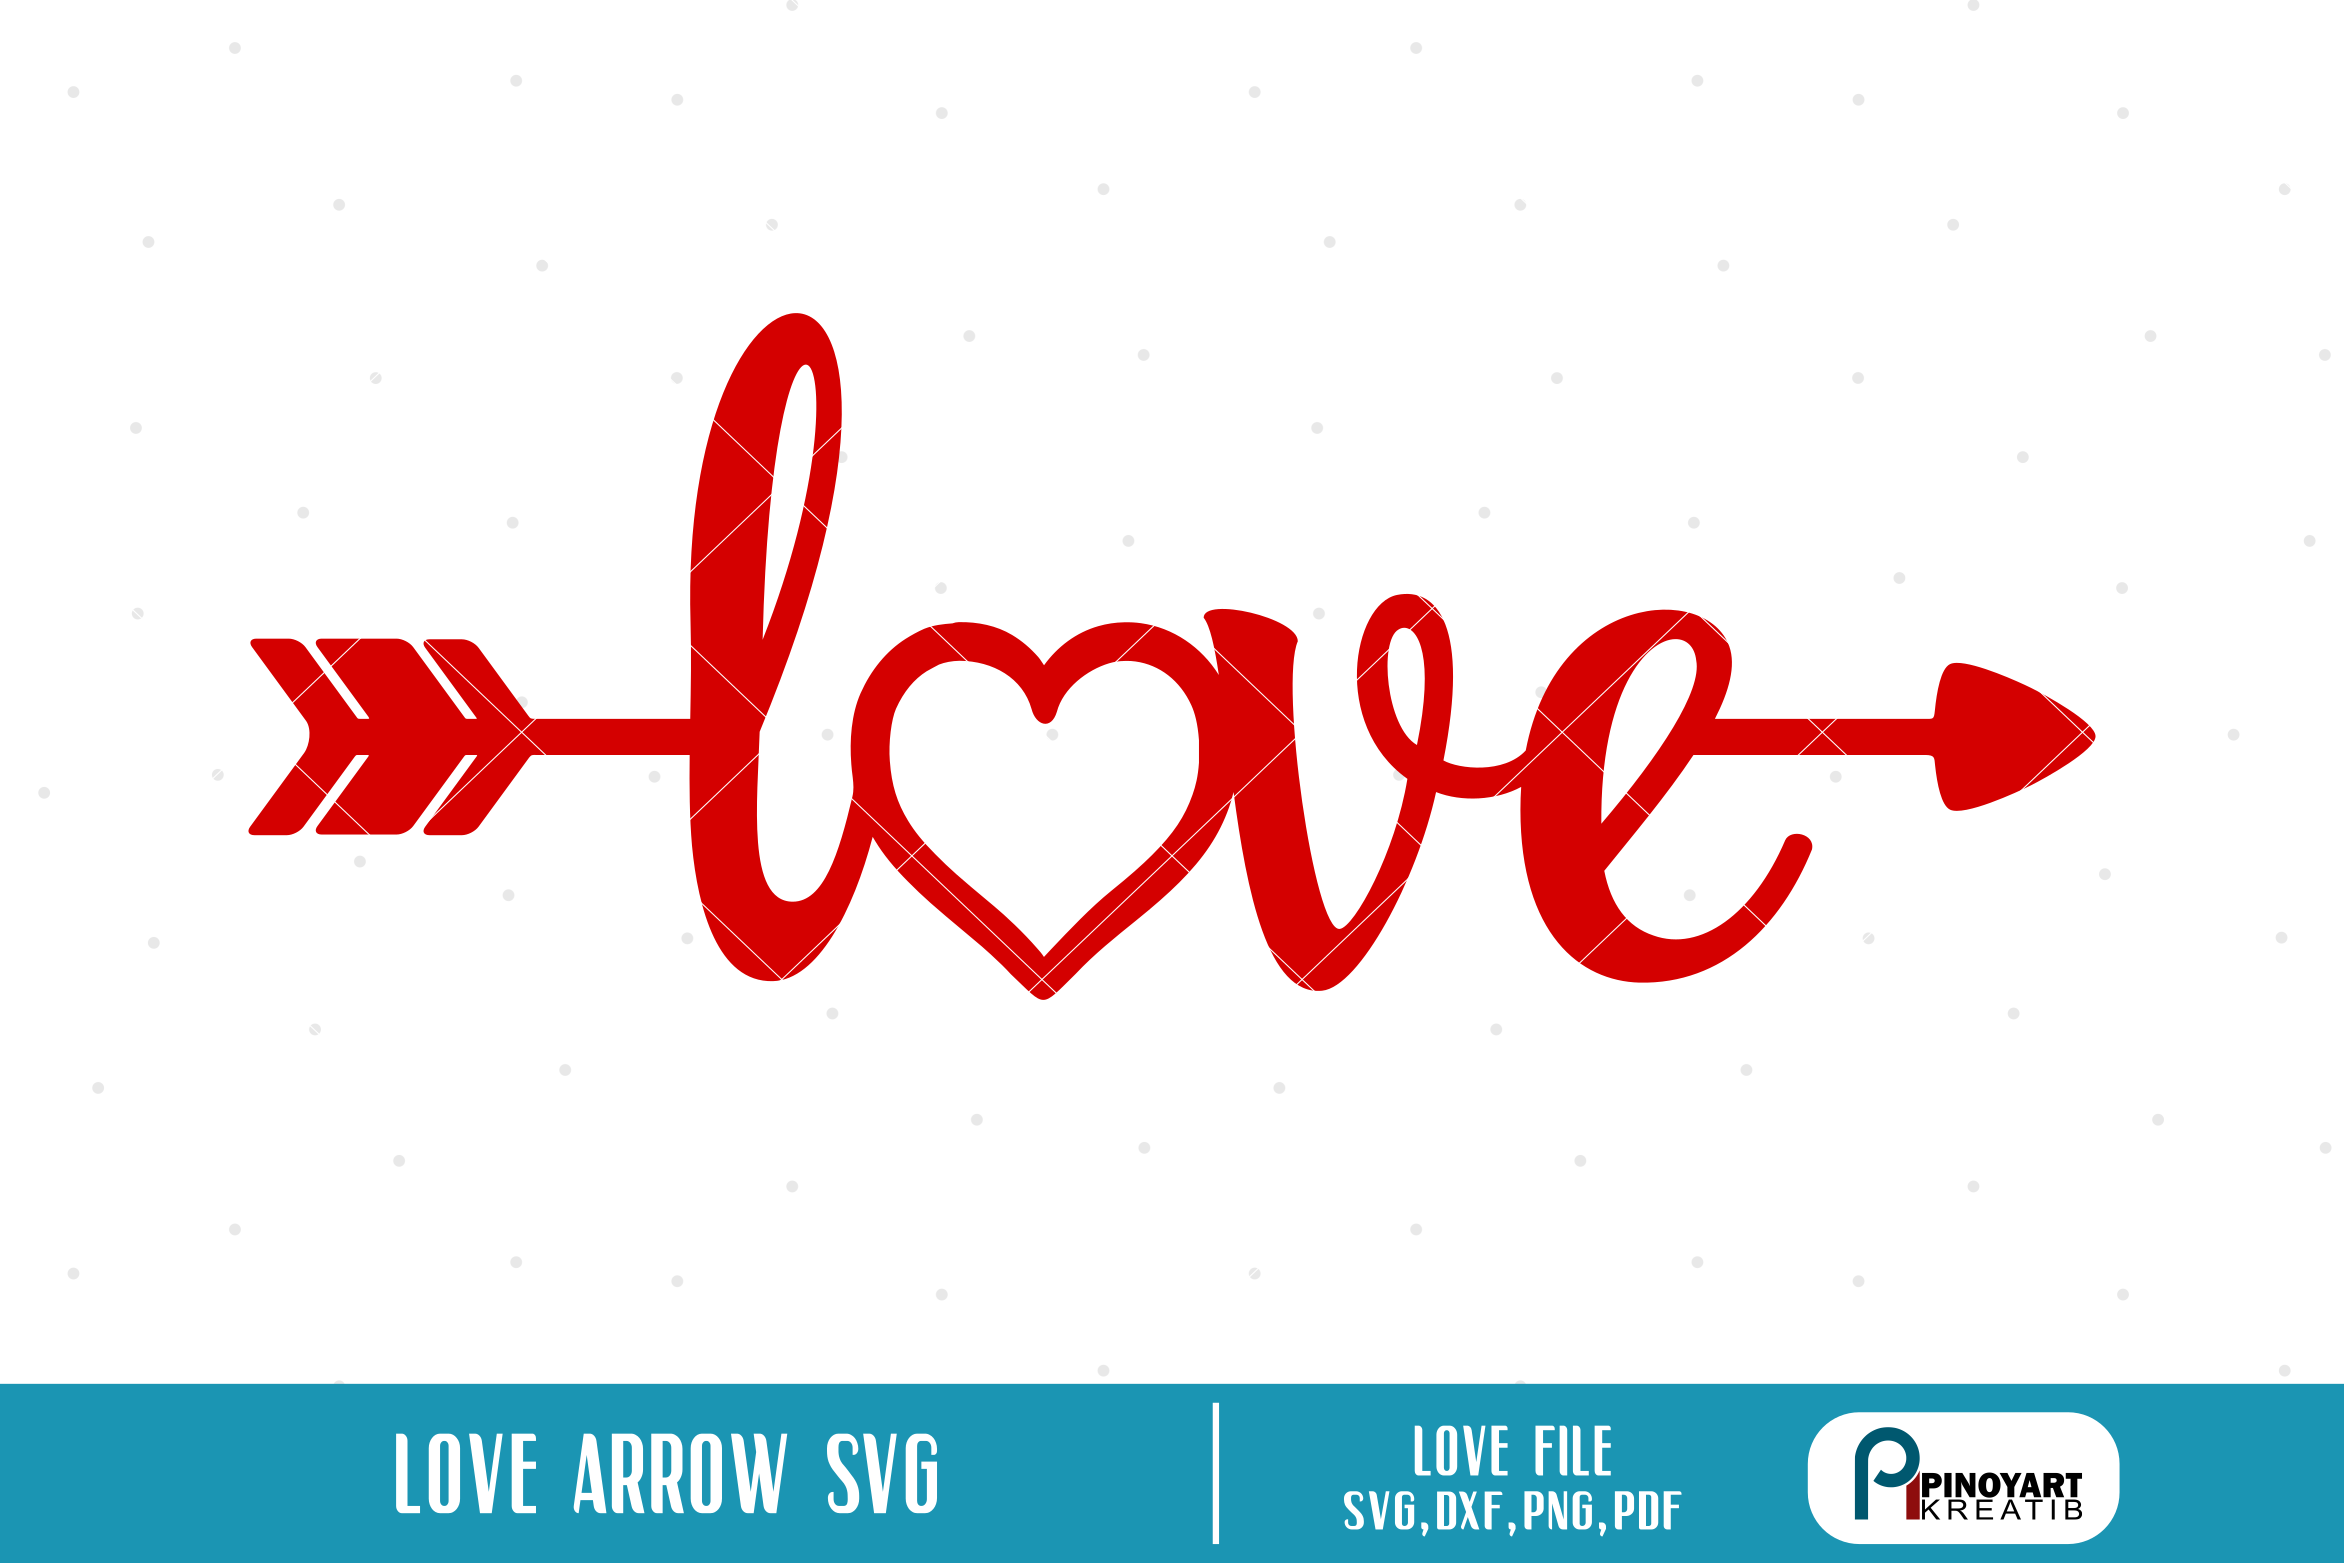 Download Love Arrow svg - a valentine arrow vector file